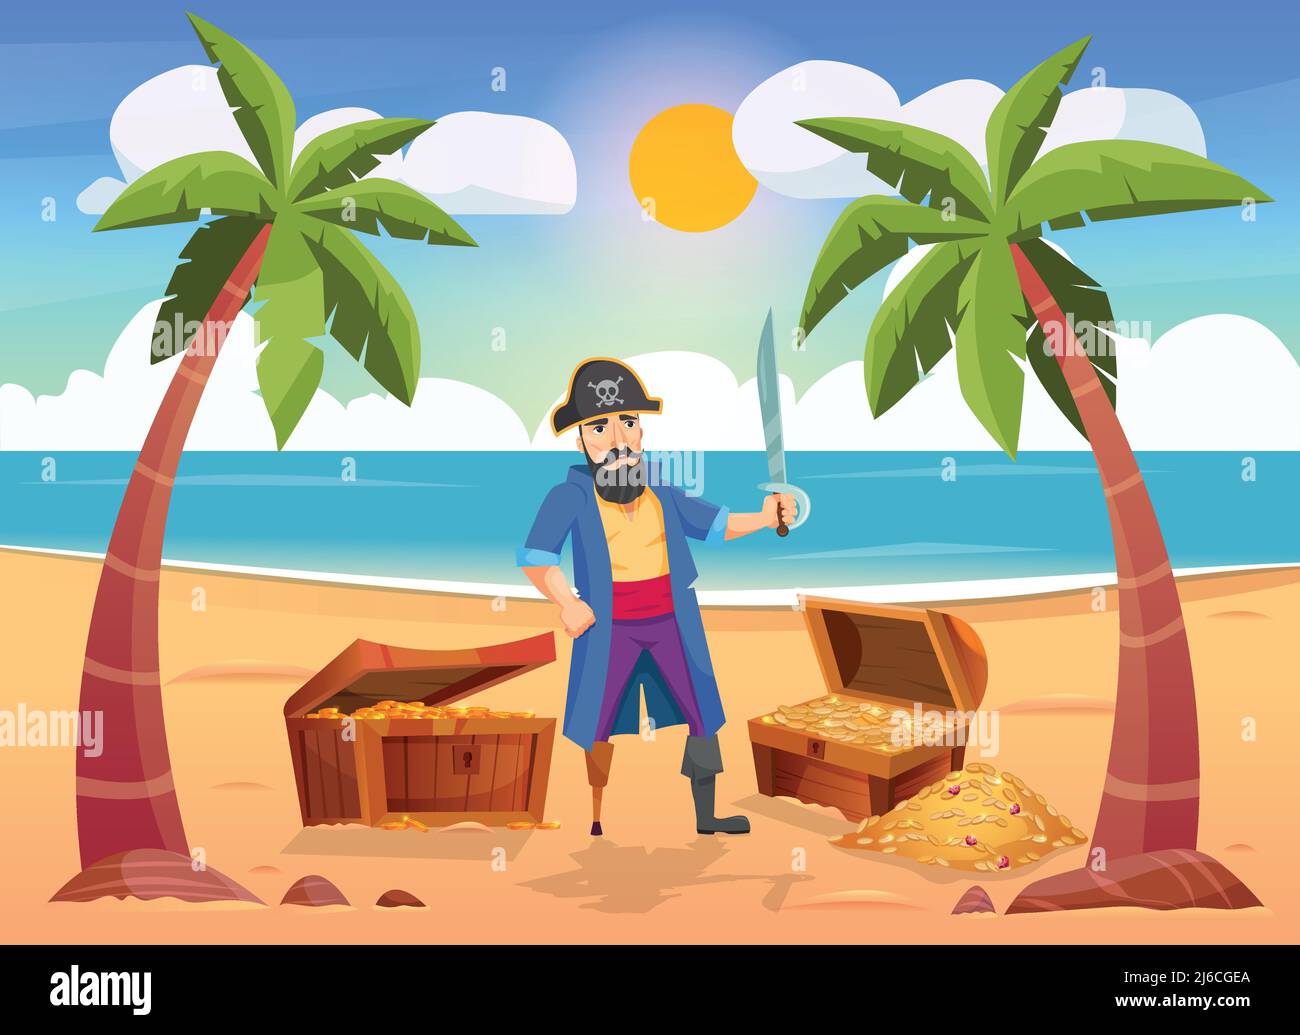 Piraten Komposition mit Insel Landschaft menschlichen Charakter mit Schatzkiste Stock Vektor